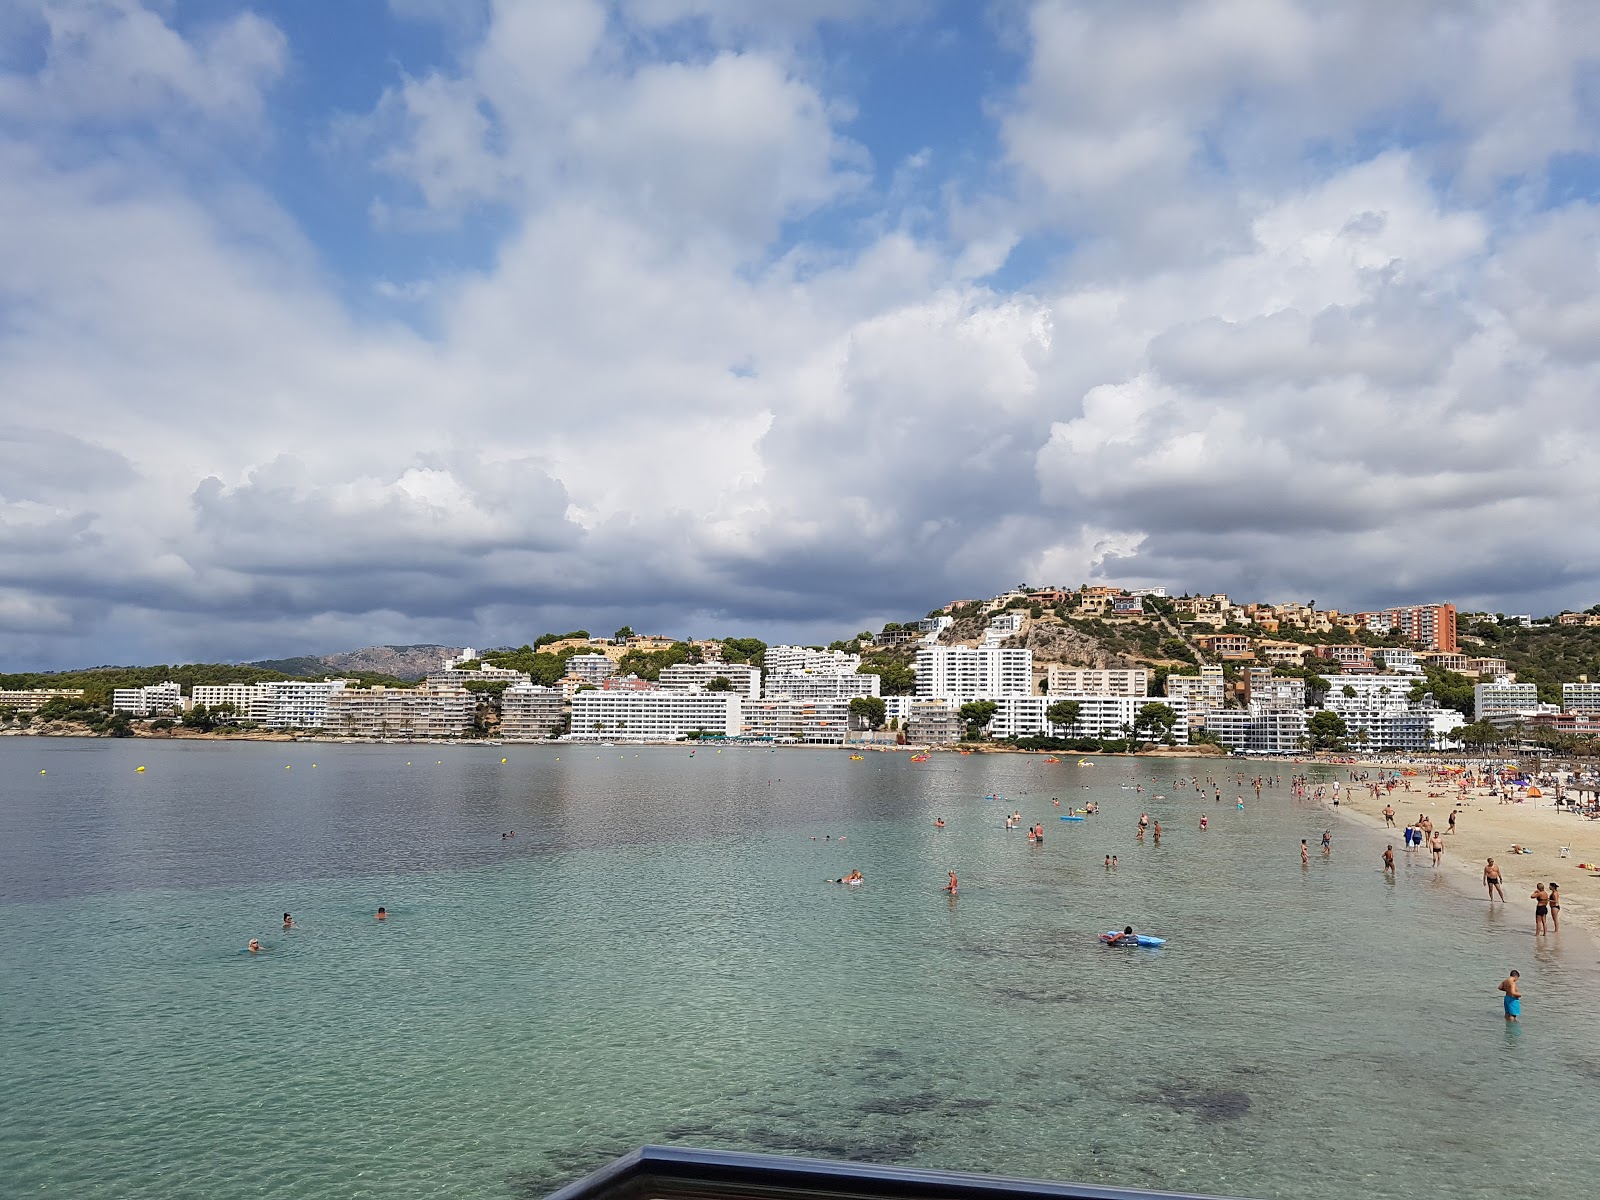 Fotografie cu Playa Santa Ponsa - locul popular printre cunoscătorii de relaxare